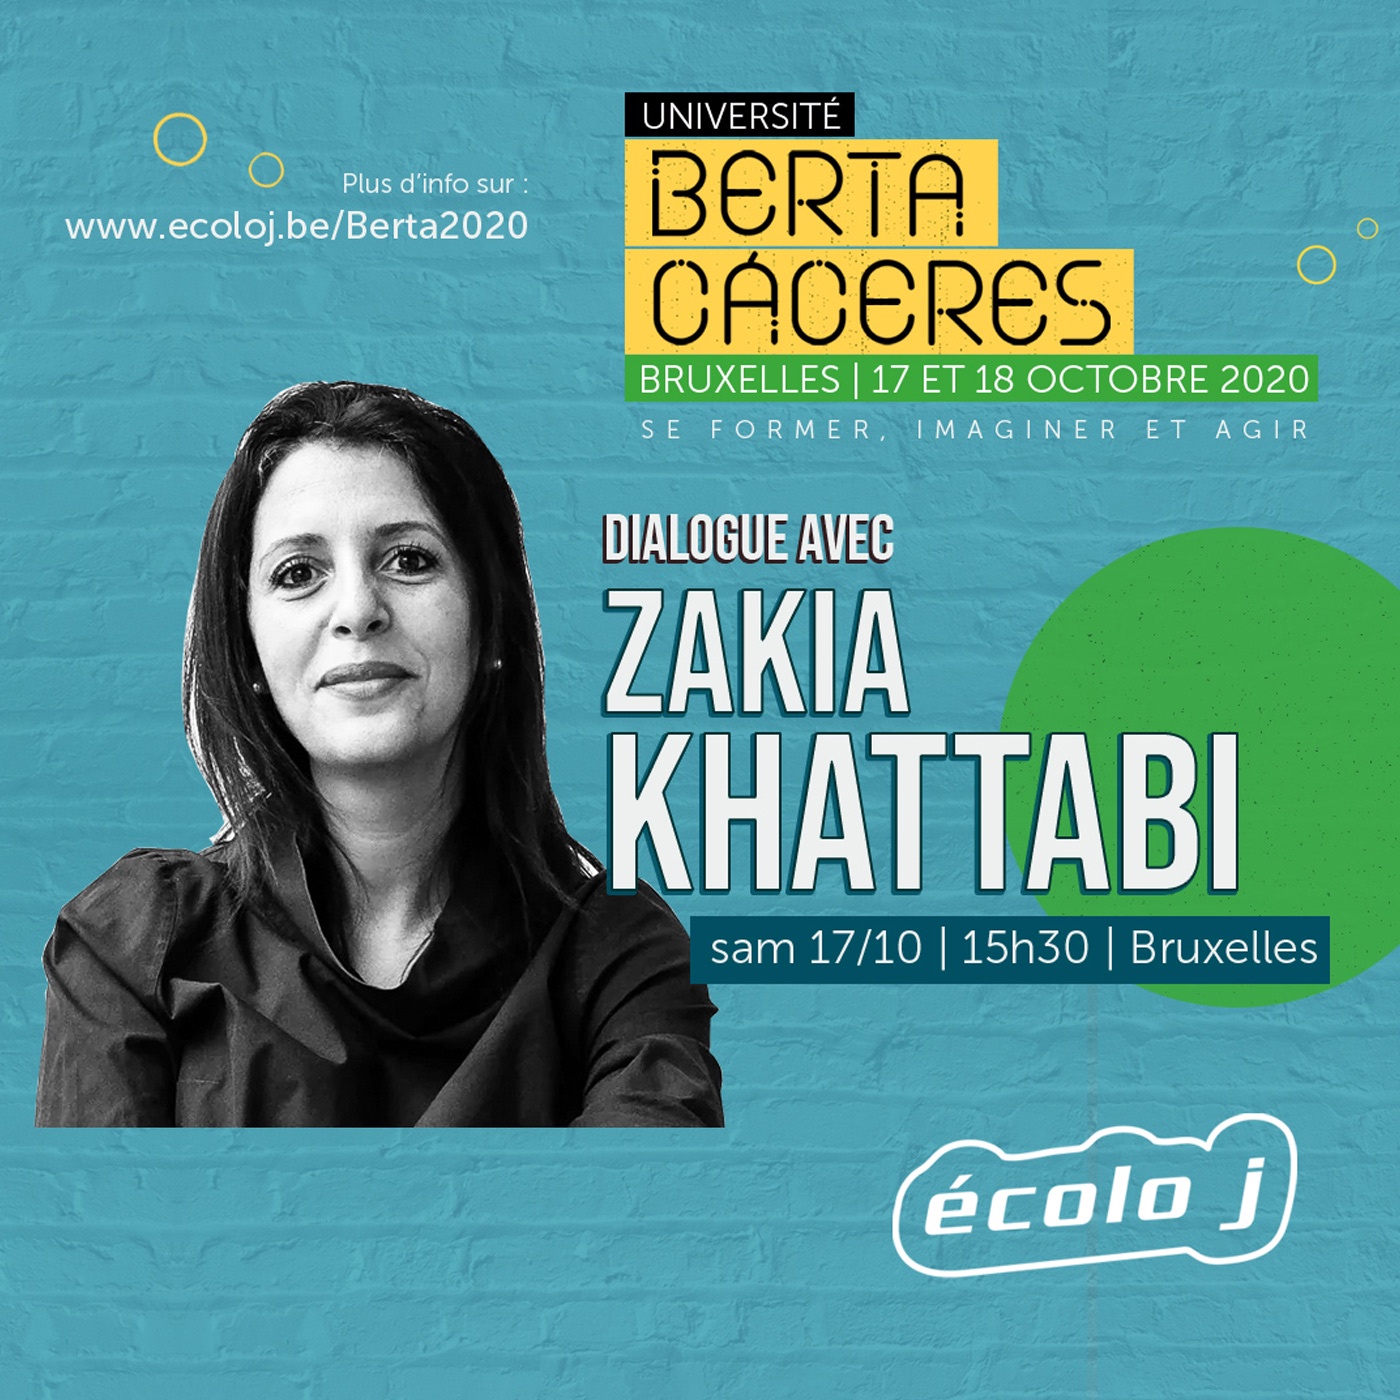 Université Berta Cáceres 2020 | Dialogue avec Zakia Khattabi